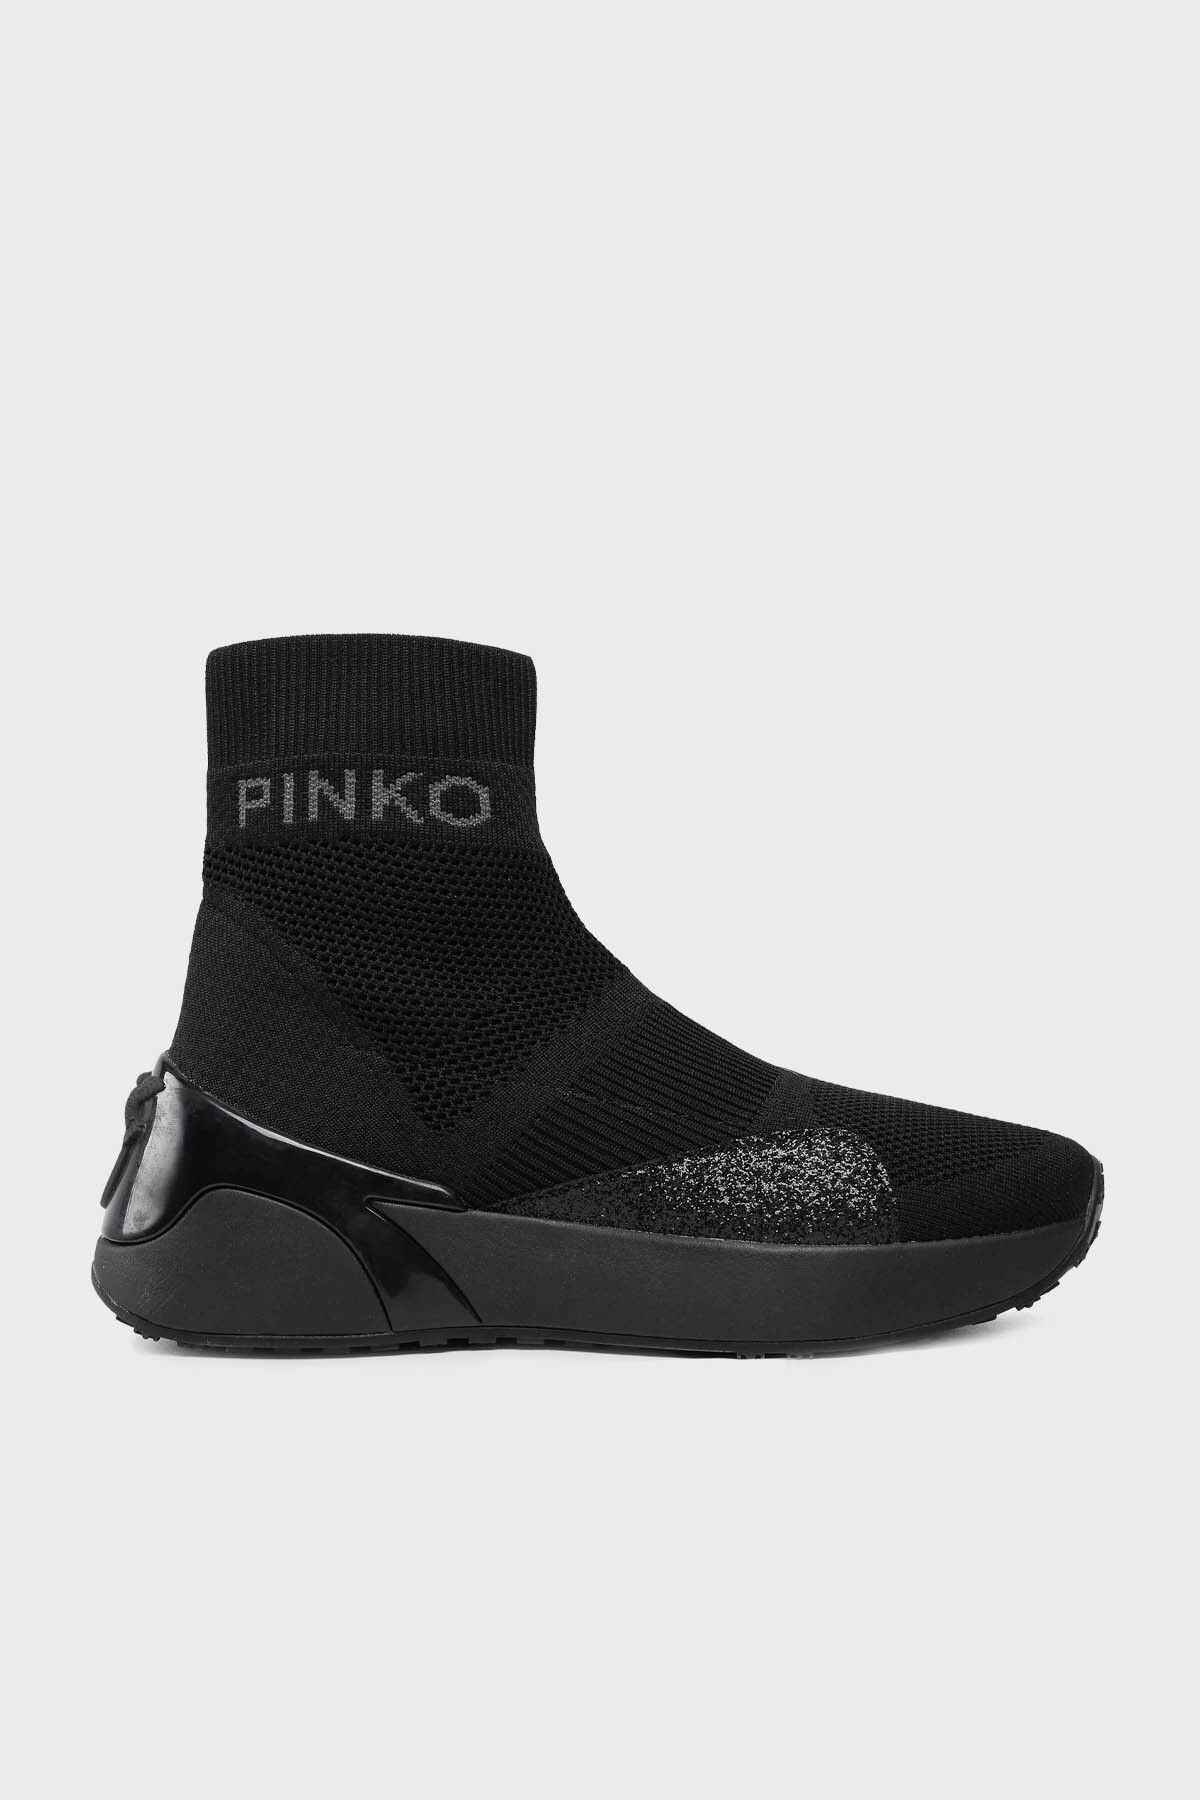 PİNKO Pinko Kalın Tabanlı Bilekli Sneaker Ayakkabı AYAKKABI 101785 A15G Z99